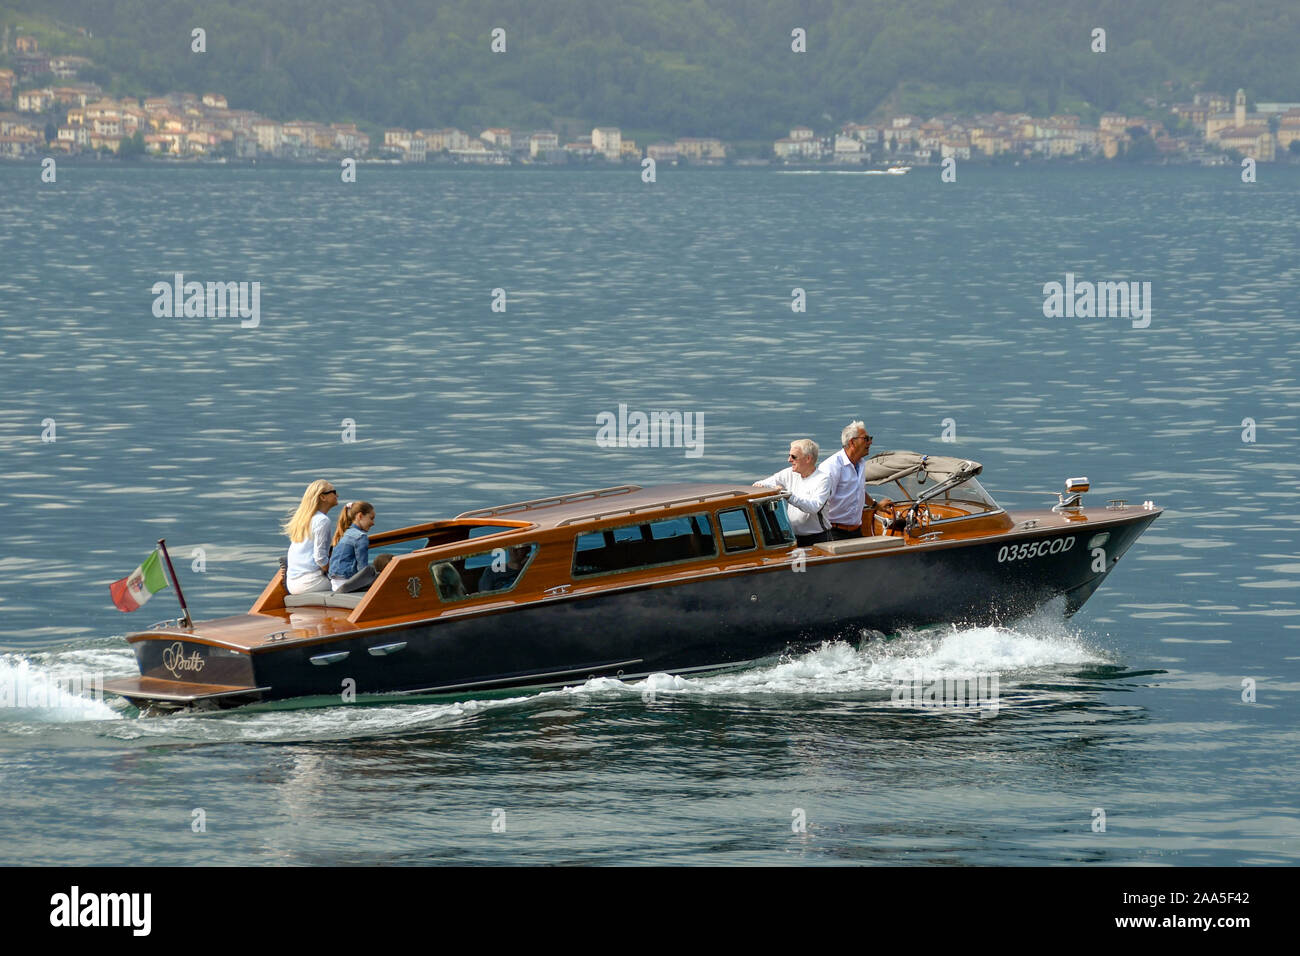 Le lac de Côme, Italie - Juin 2019 : famille sur un bateau à moteur privé sur le lac de Côme Banque D'Images